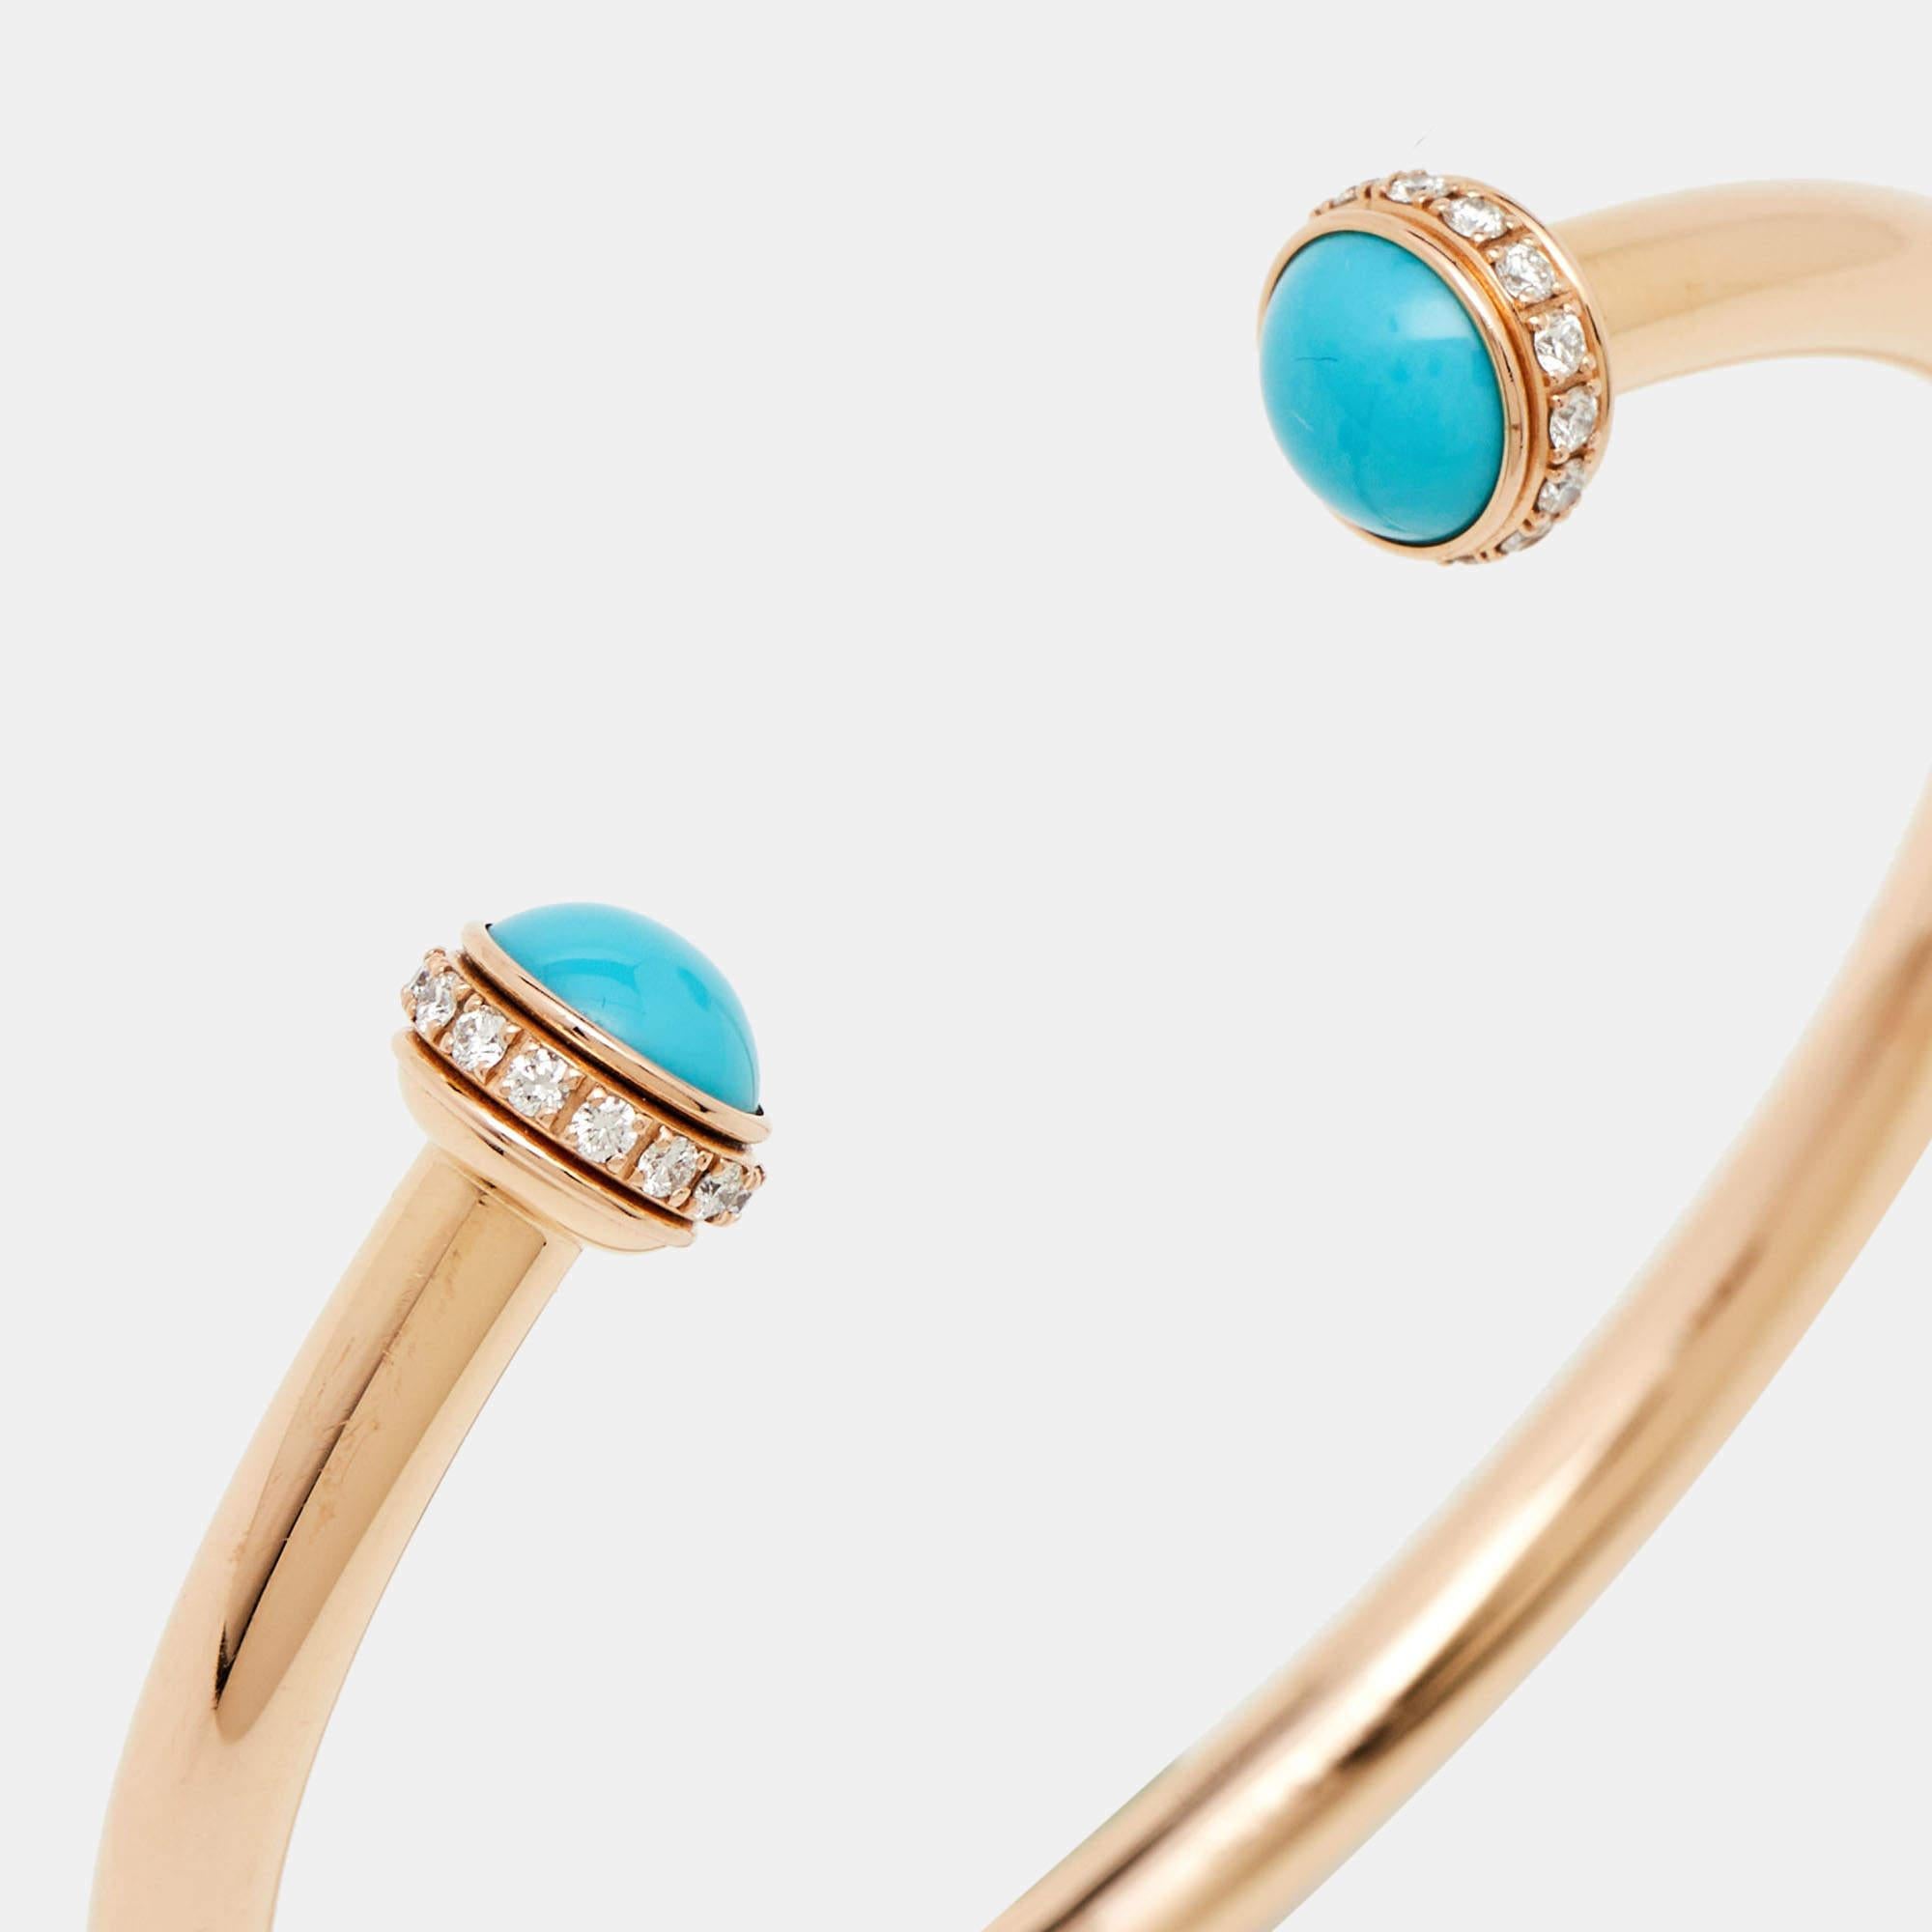 Montrez votre amour pour l'art et les accessoires de luxe avec ce superbe bracelet manchette ouvert de Piaget, réalisé en or rose 18 carats. L'une des collections les plus populaires de Piaget est Possession, qui se caractérise par des anneaux